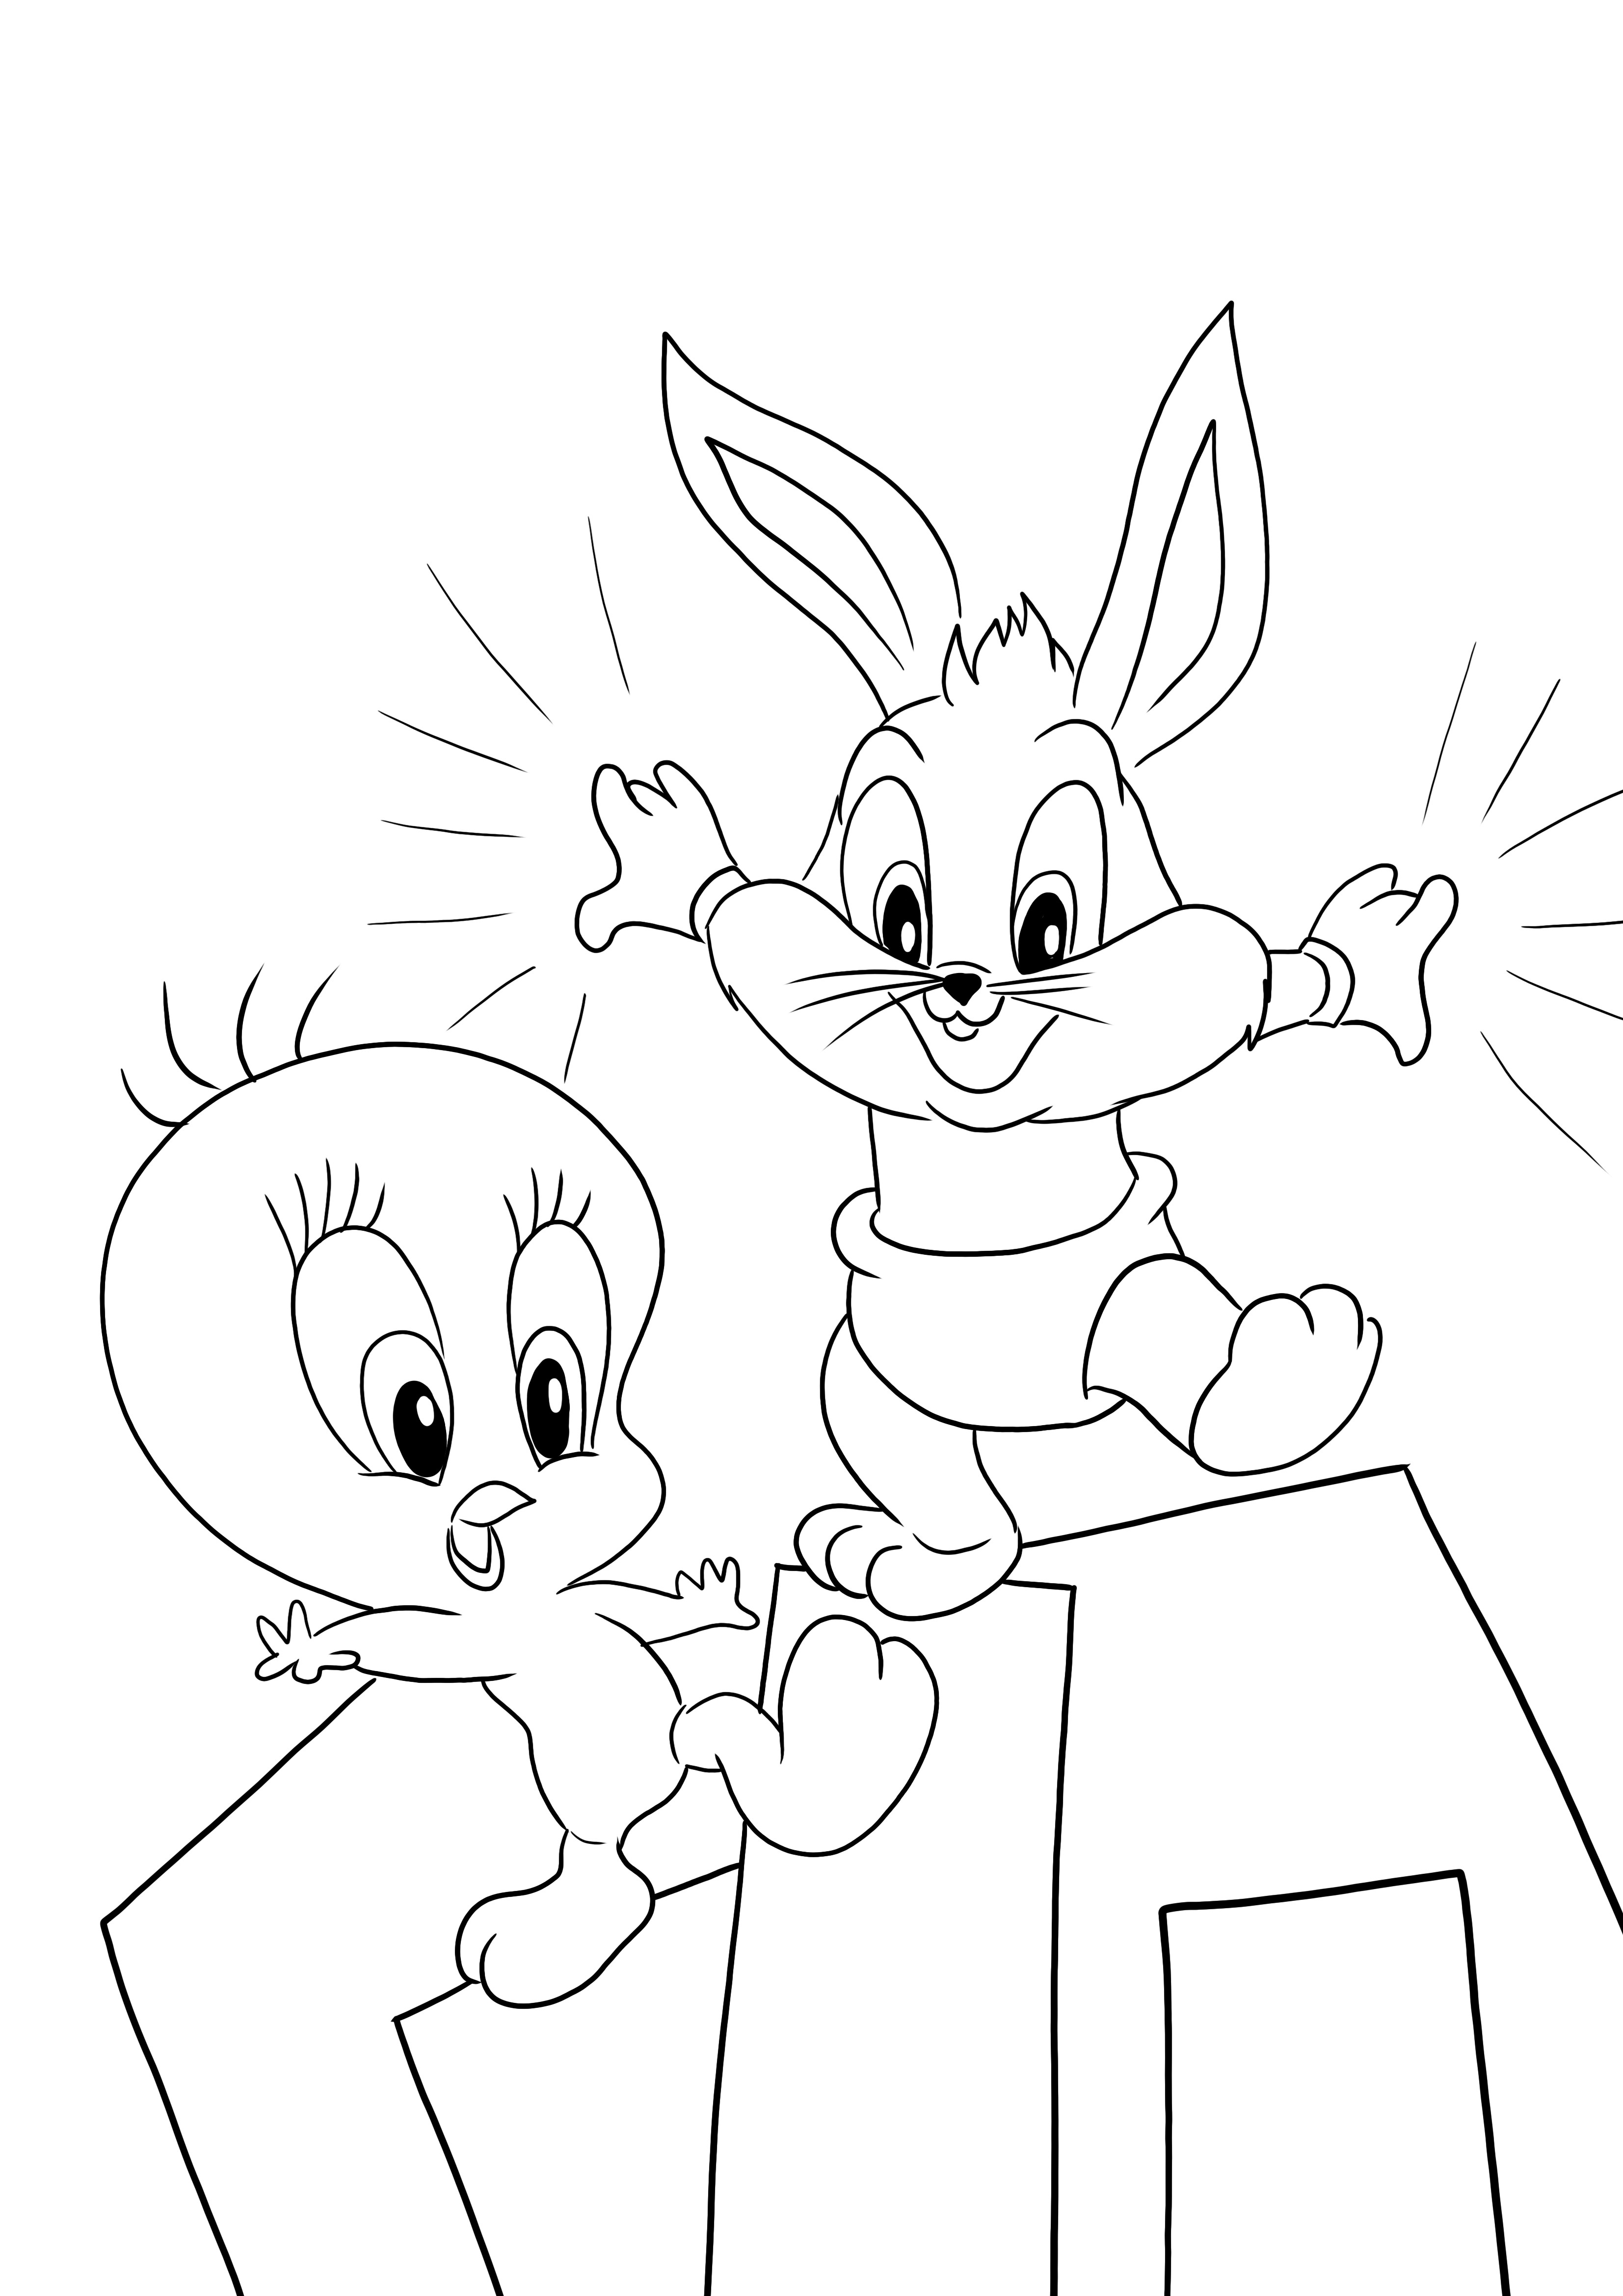 Tweety i Królik Bugs z Baby Looney Tunes do wydrukowania i pokolorowania za darmo